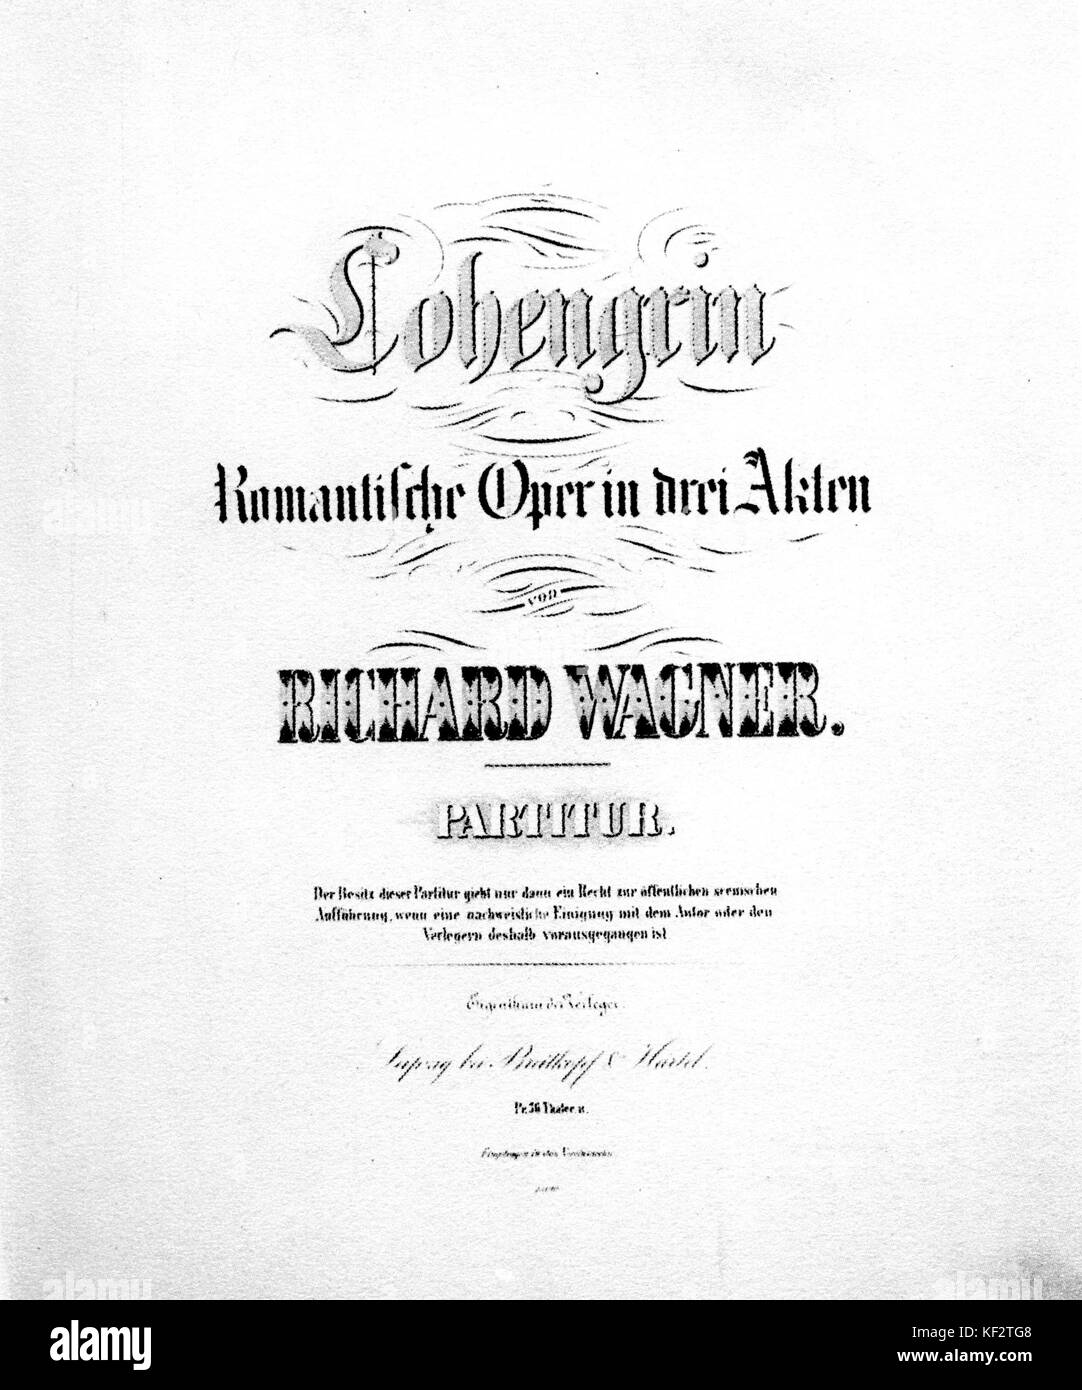 ' Lohengrin", opera di Richard Wagner, titlepage recita: Lohengrin romantische Oper in Drei Akten'. Compositore tedesco & autore, 22 maggio 1813 - 13 febbraio 1883. Foto Stock